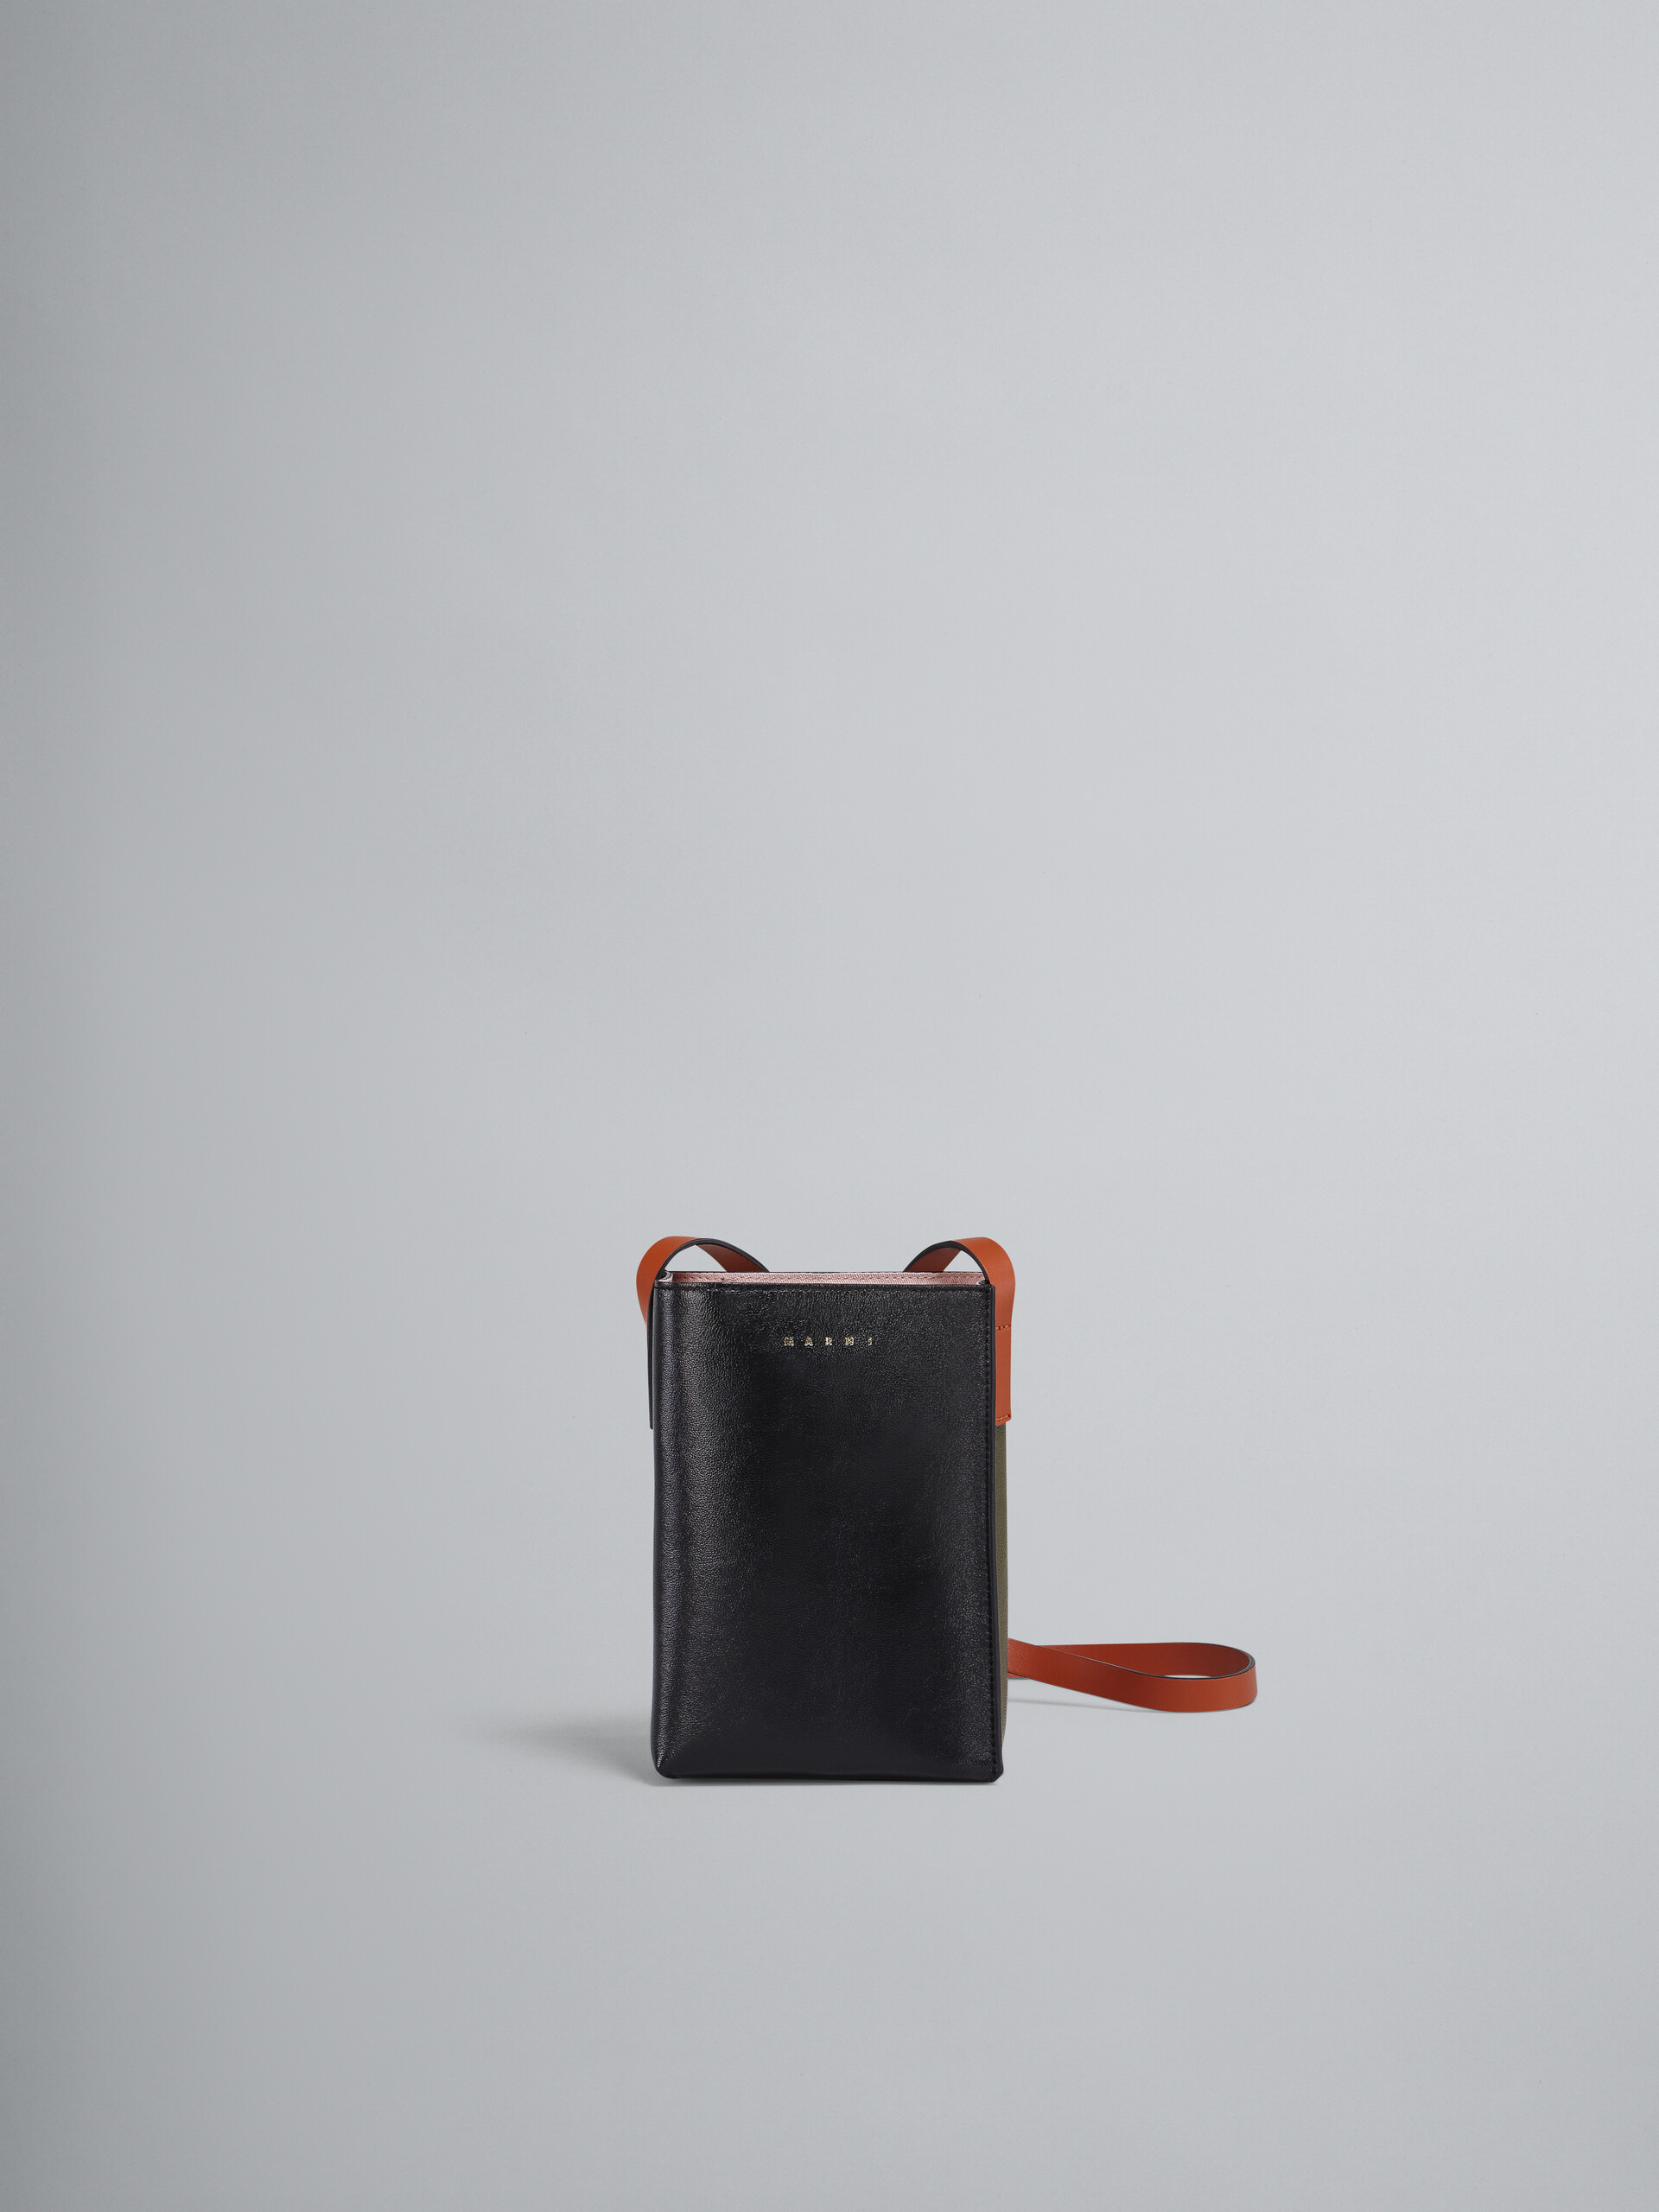 블랙 및 그린 가죽 MUSEO SOFT 나노 백 - Shoulder Bag - Image 1